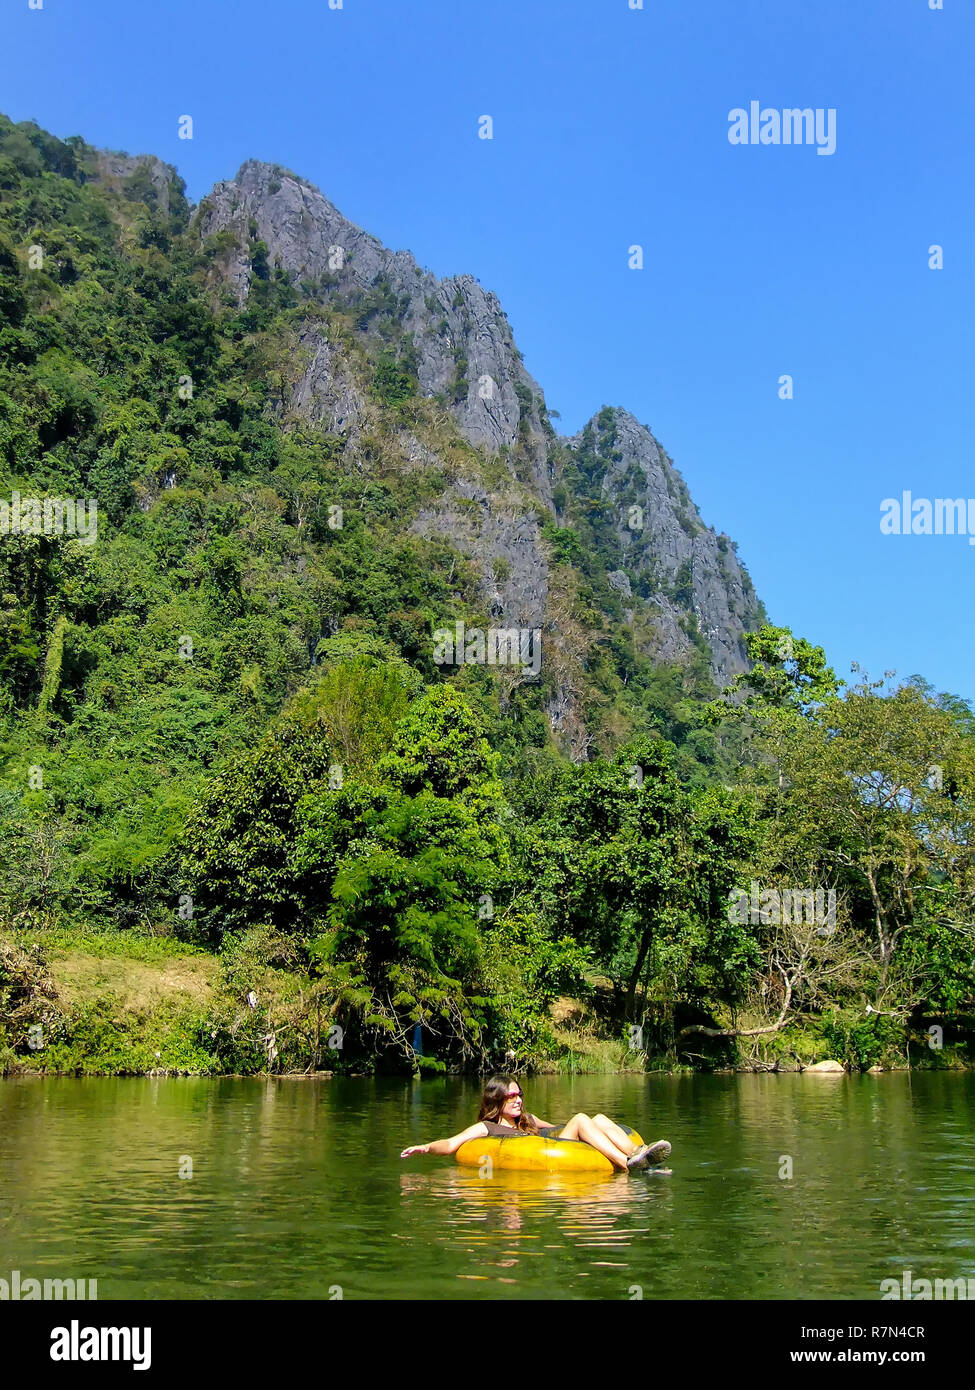 Touristische hinunter Nam Song Fluss in einem Rohr durch die Karstlandschaft in Vang Vieng, Laos umgeben. Tubing ist eine beliebte touristische Aktivität in Vang Vieng. Stockfoto